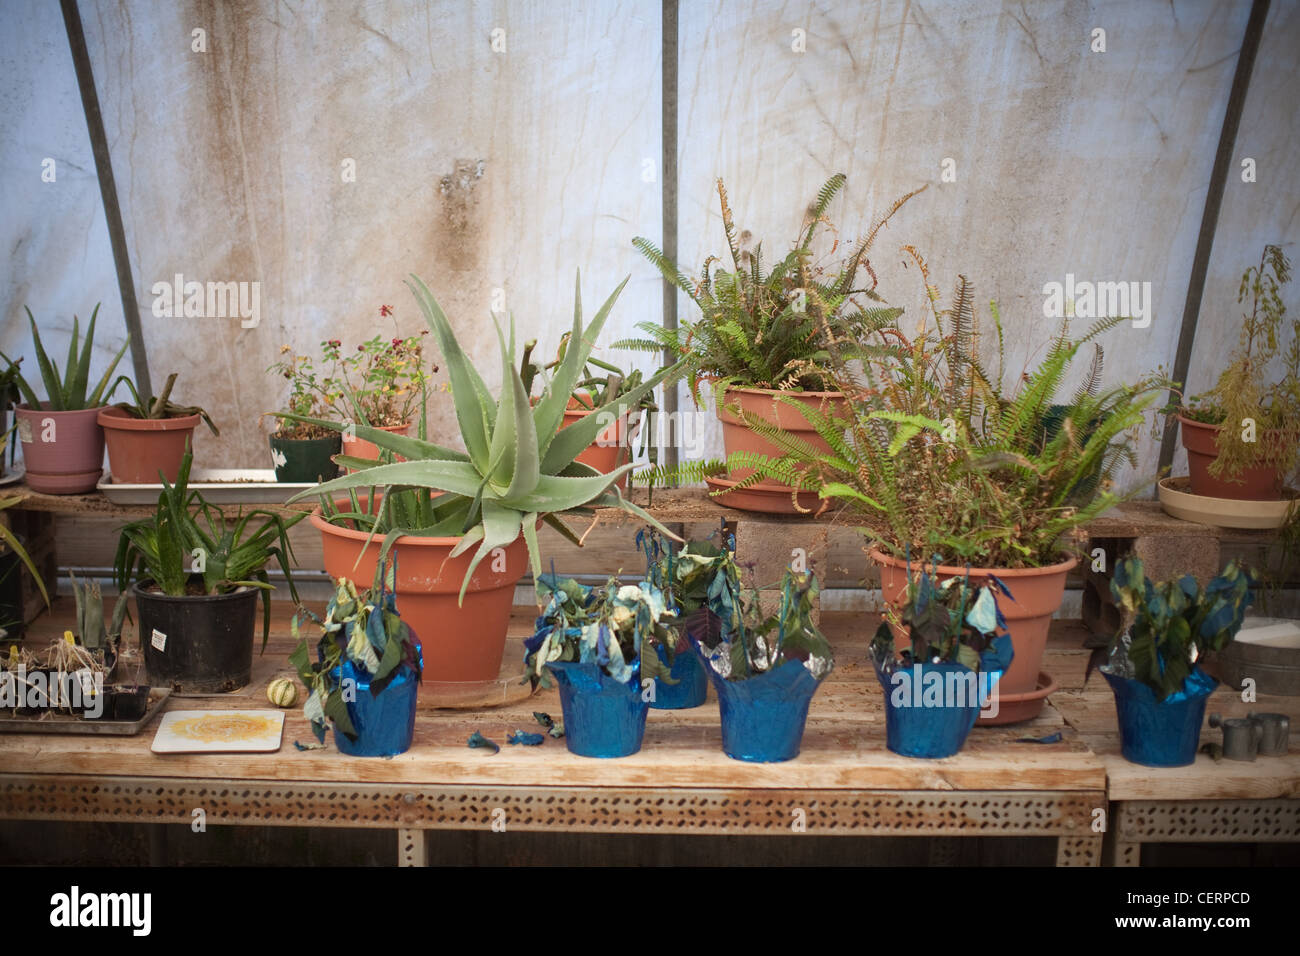 Tabelle der Aloe-Vera-Pflanzen und andere heilende Kräuter und Pflanzen. Stockfoto